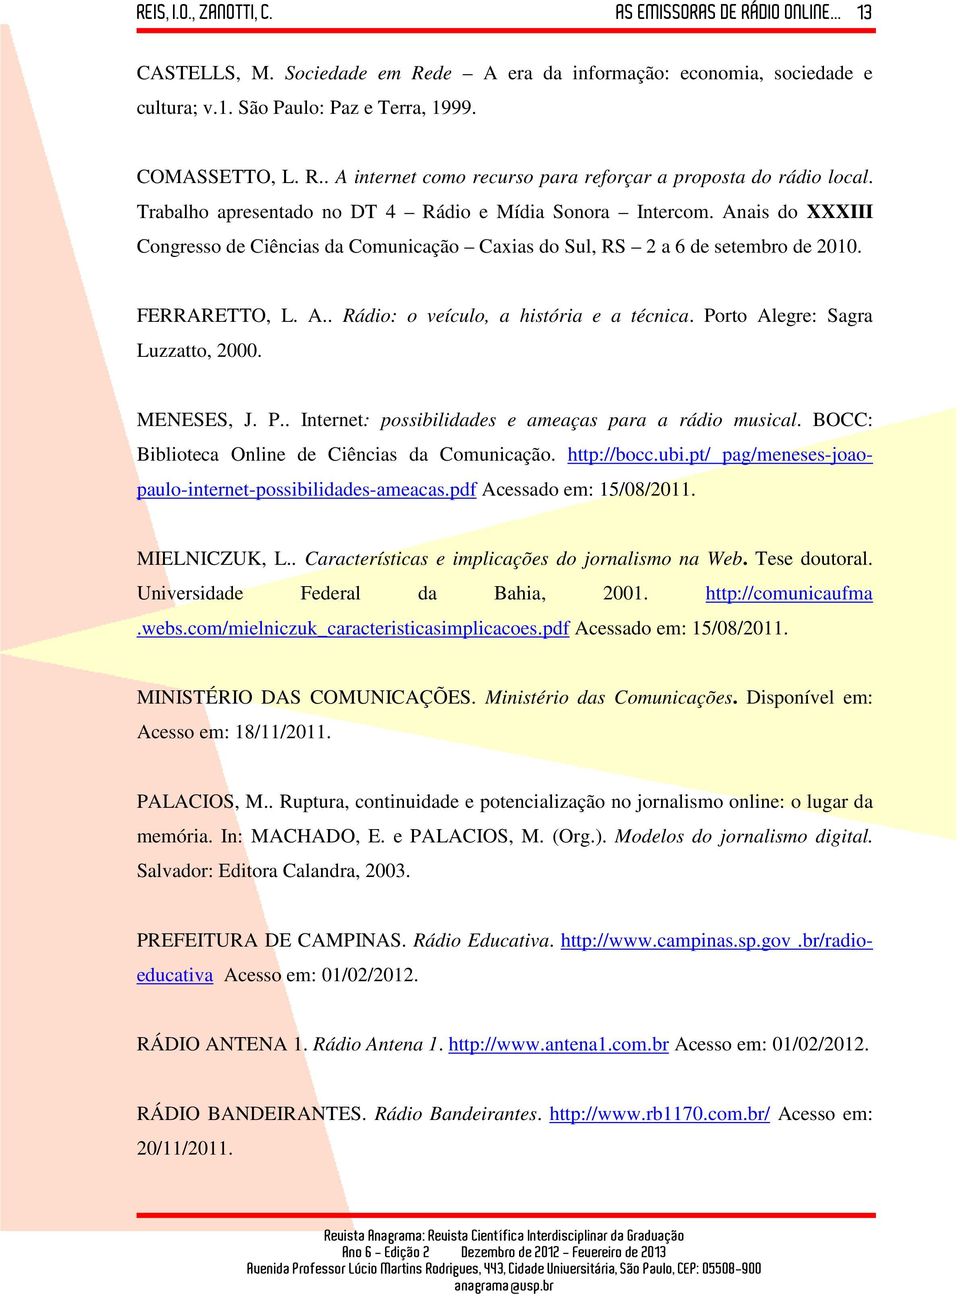 Porto Alegre: Sagra Luzzatto, 2000. MENESES, J. P.. Internet: possibilidades e ameaças para a rádio musical. BOCC: Biblioteca Online de Ciências da Comunicação. http://bocc.ubi.